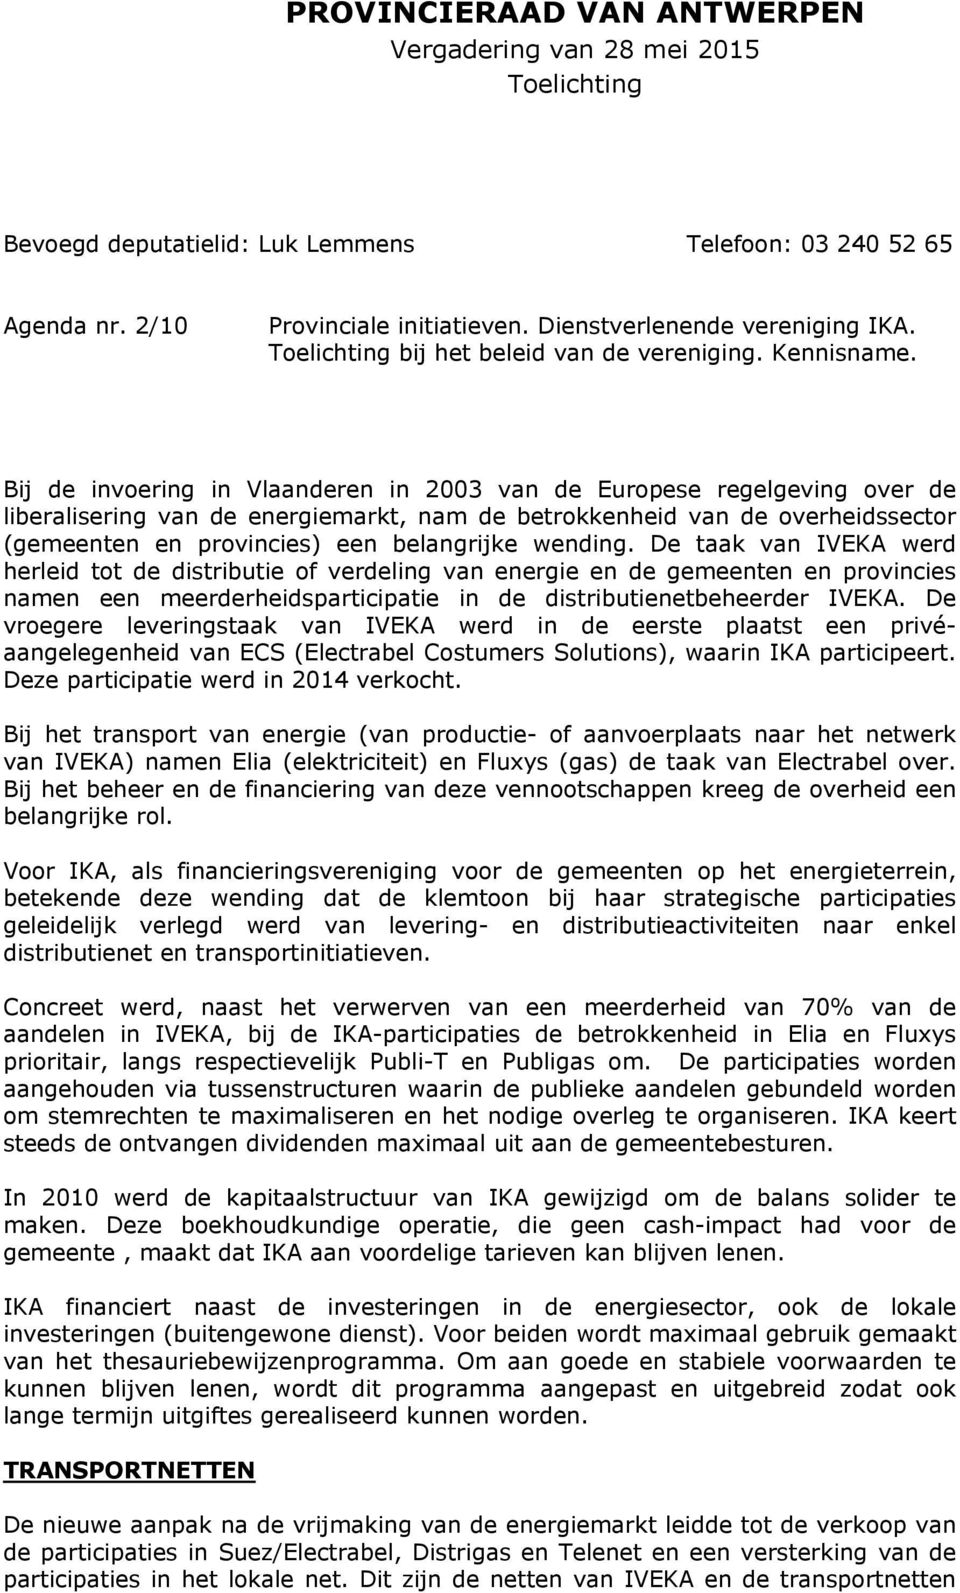 Bij de invoering in Vlaanderen in 2003 van de Europese regelgeving over de liberalisering van de energiemarkt, nam de betrokkenheid van de overheidssector (gemeenten en provincies) een belangrijke